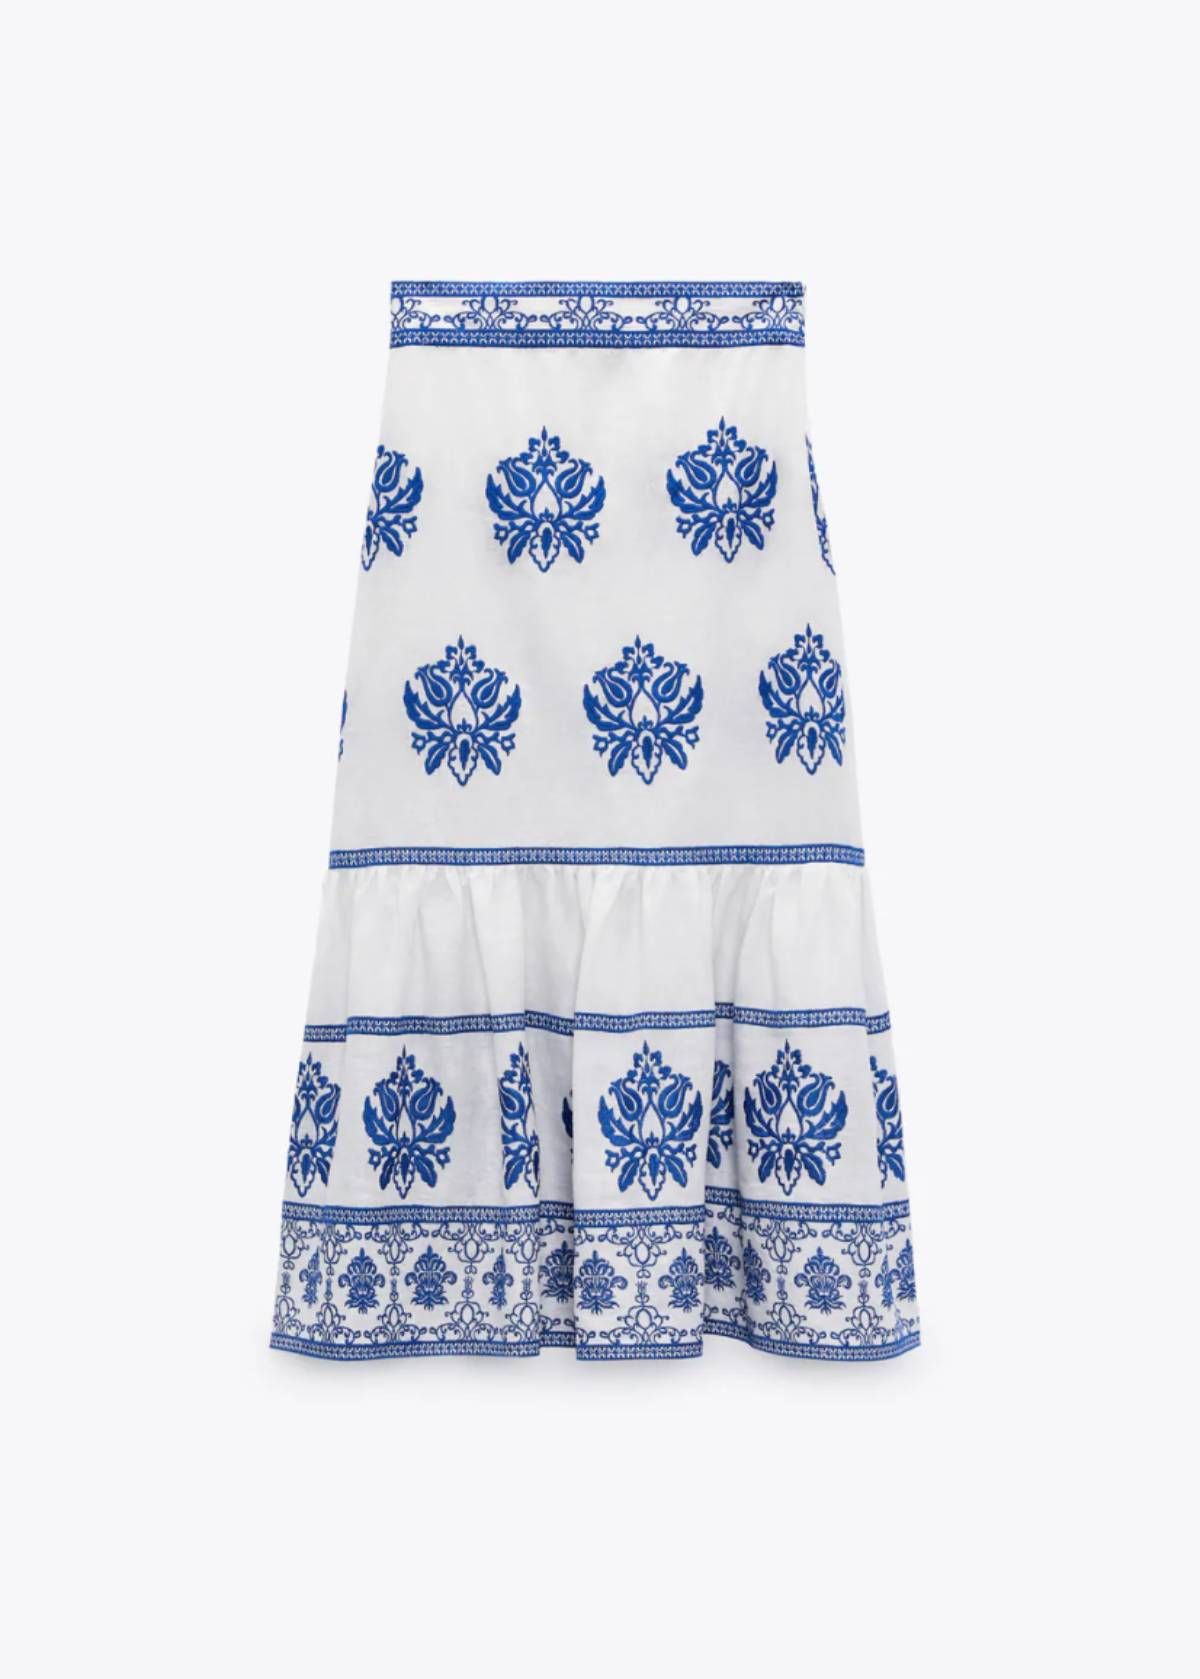 Falda midi blanca con bordados en azul de Zara